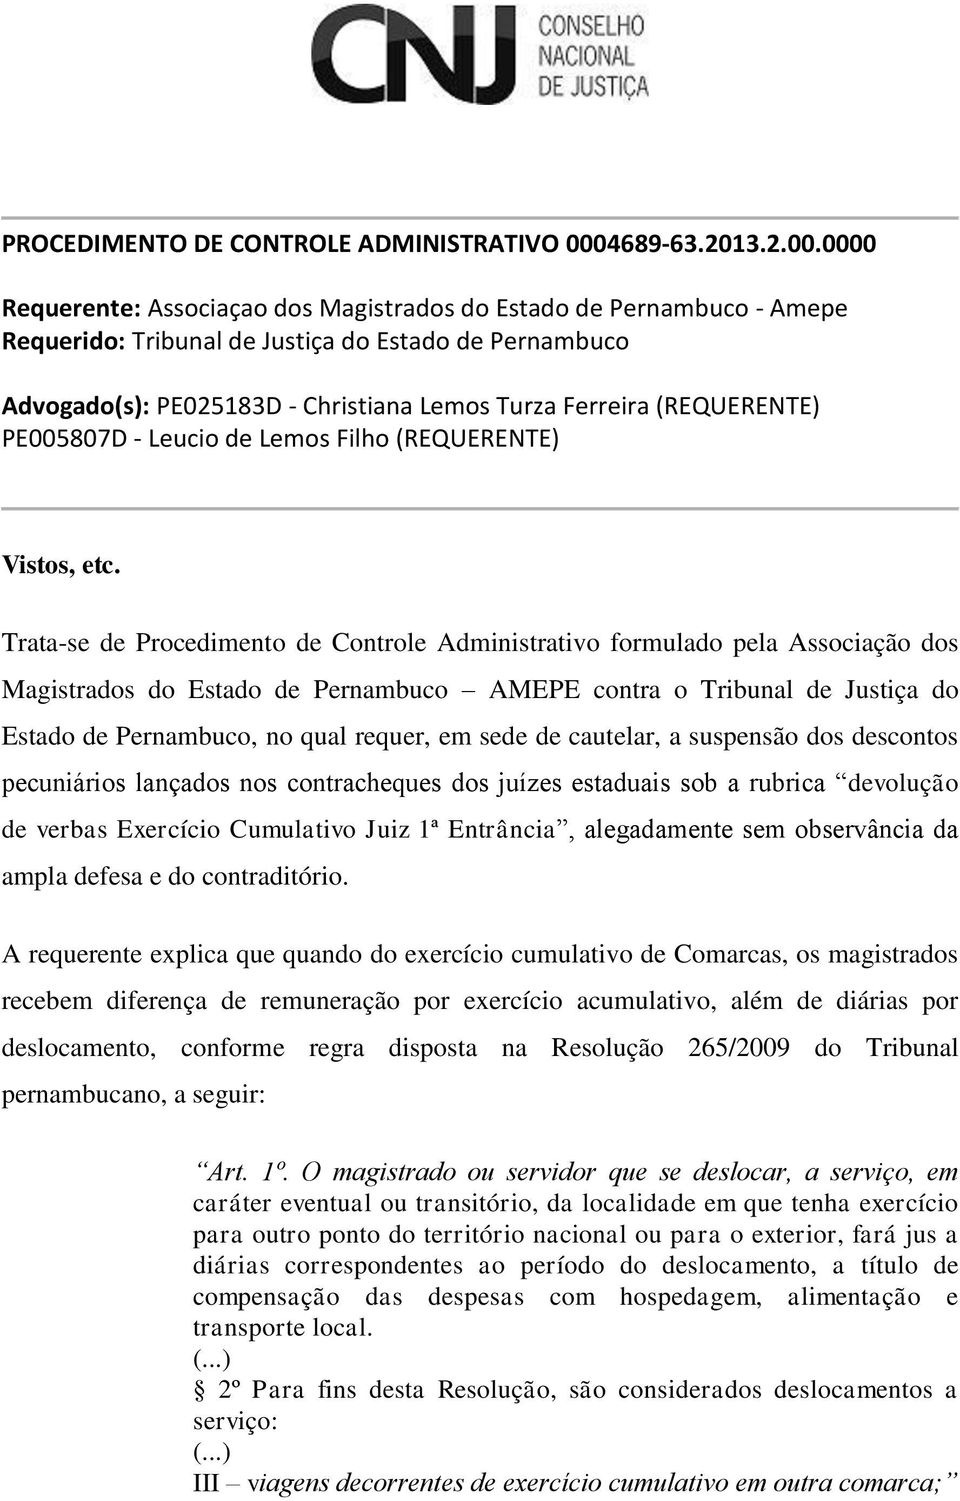 0000 Requerente: Associaçao dos Magistrados do Estado de Pernambuco - Amepe Requerido: Tribunal de Justiça do Estado de Pernambuco Advogado(s): PE025183D - Christiana Lemos Turza Ferreira